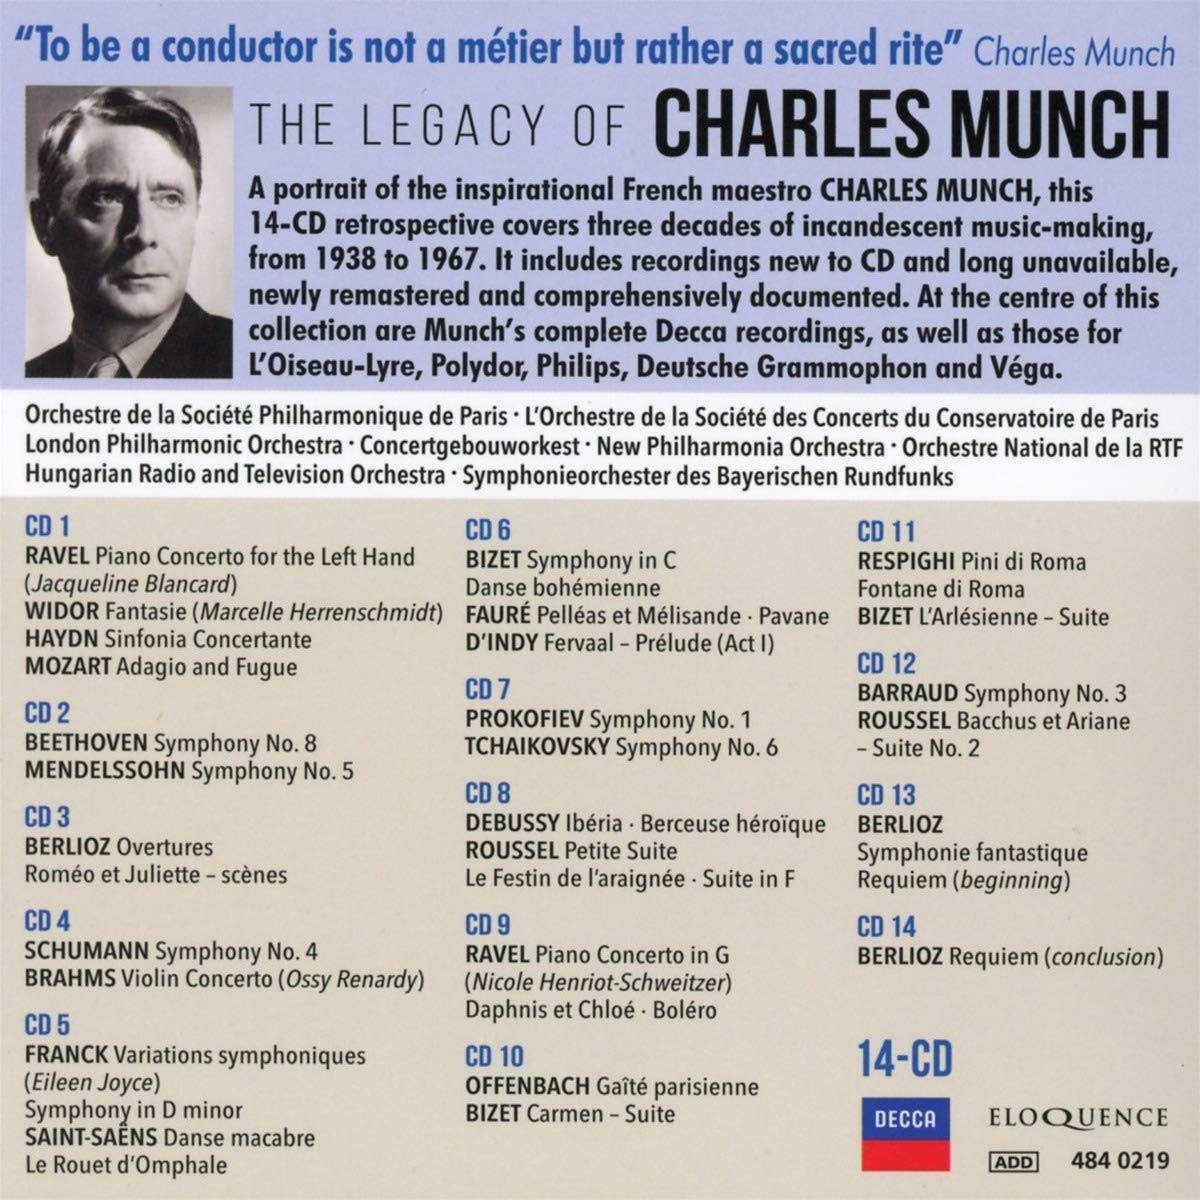 샤를 뮌시의 유산 (The Legacy of Charles Munch) 